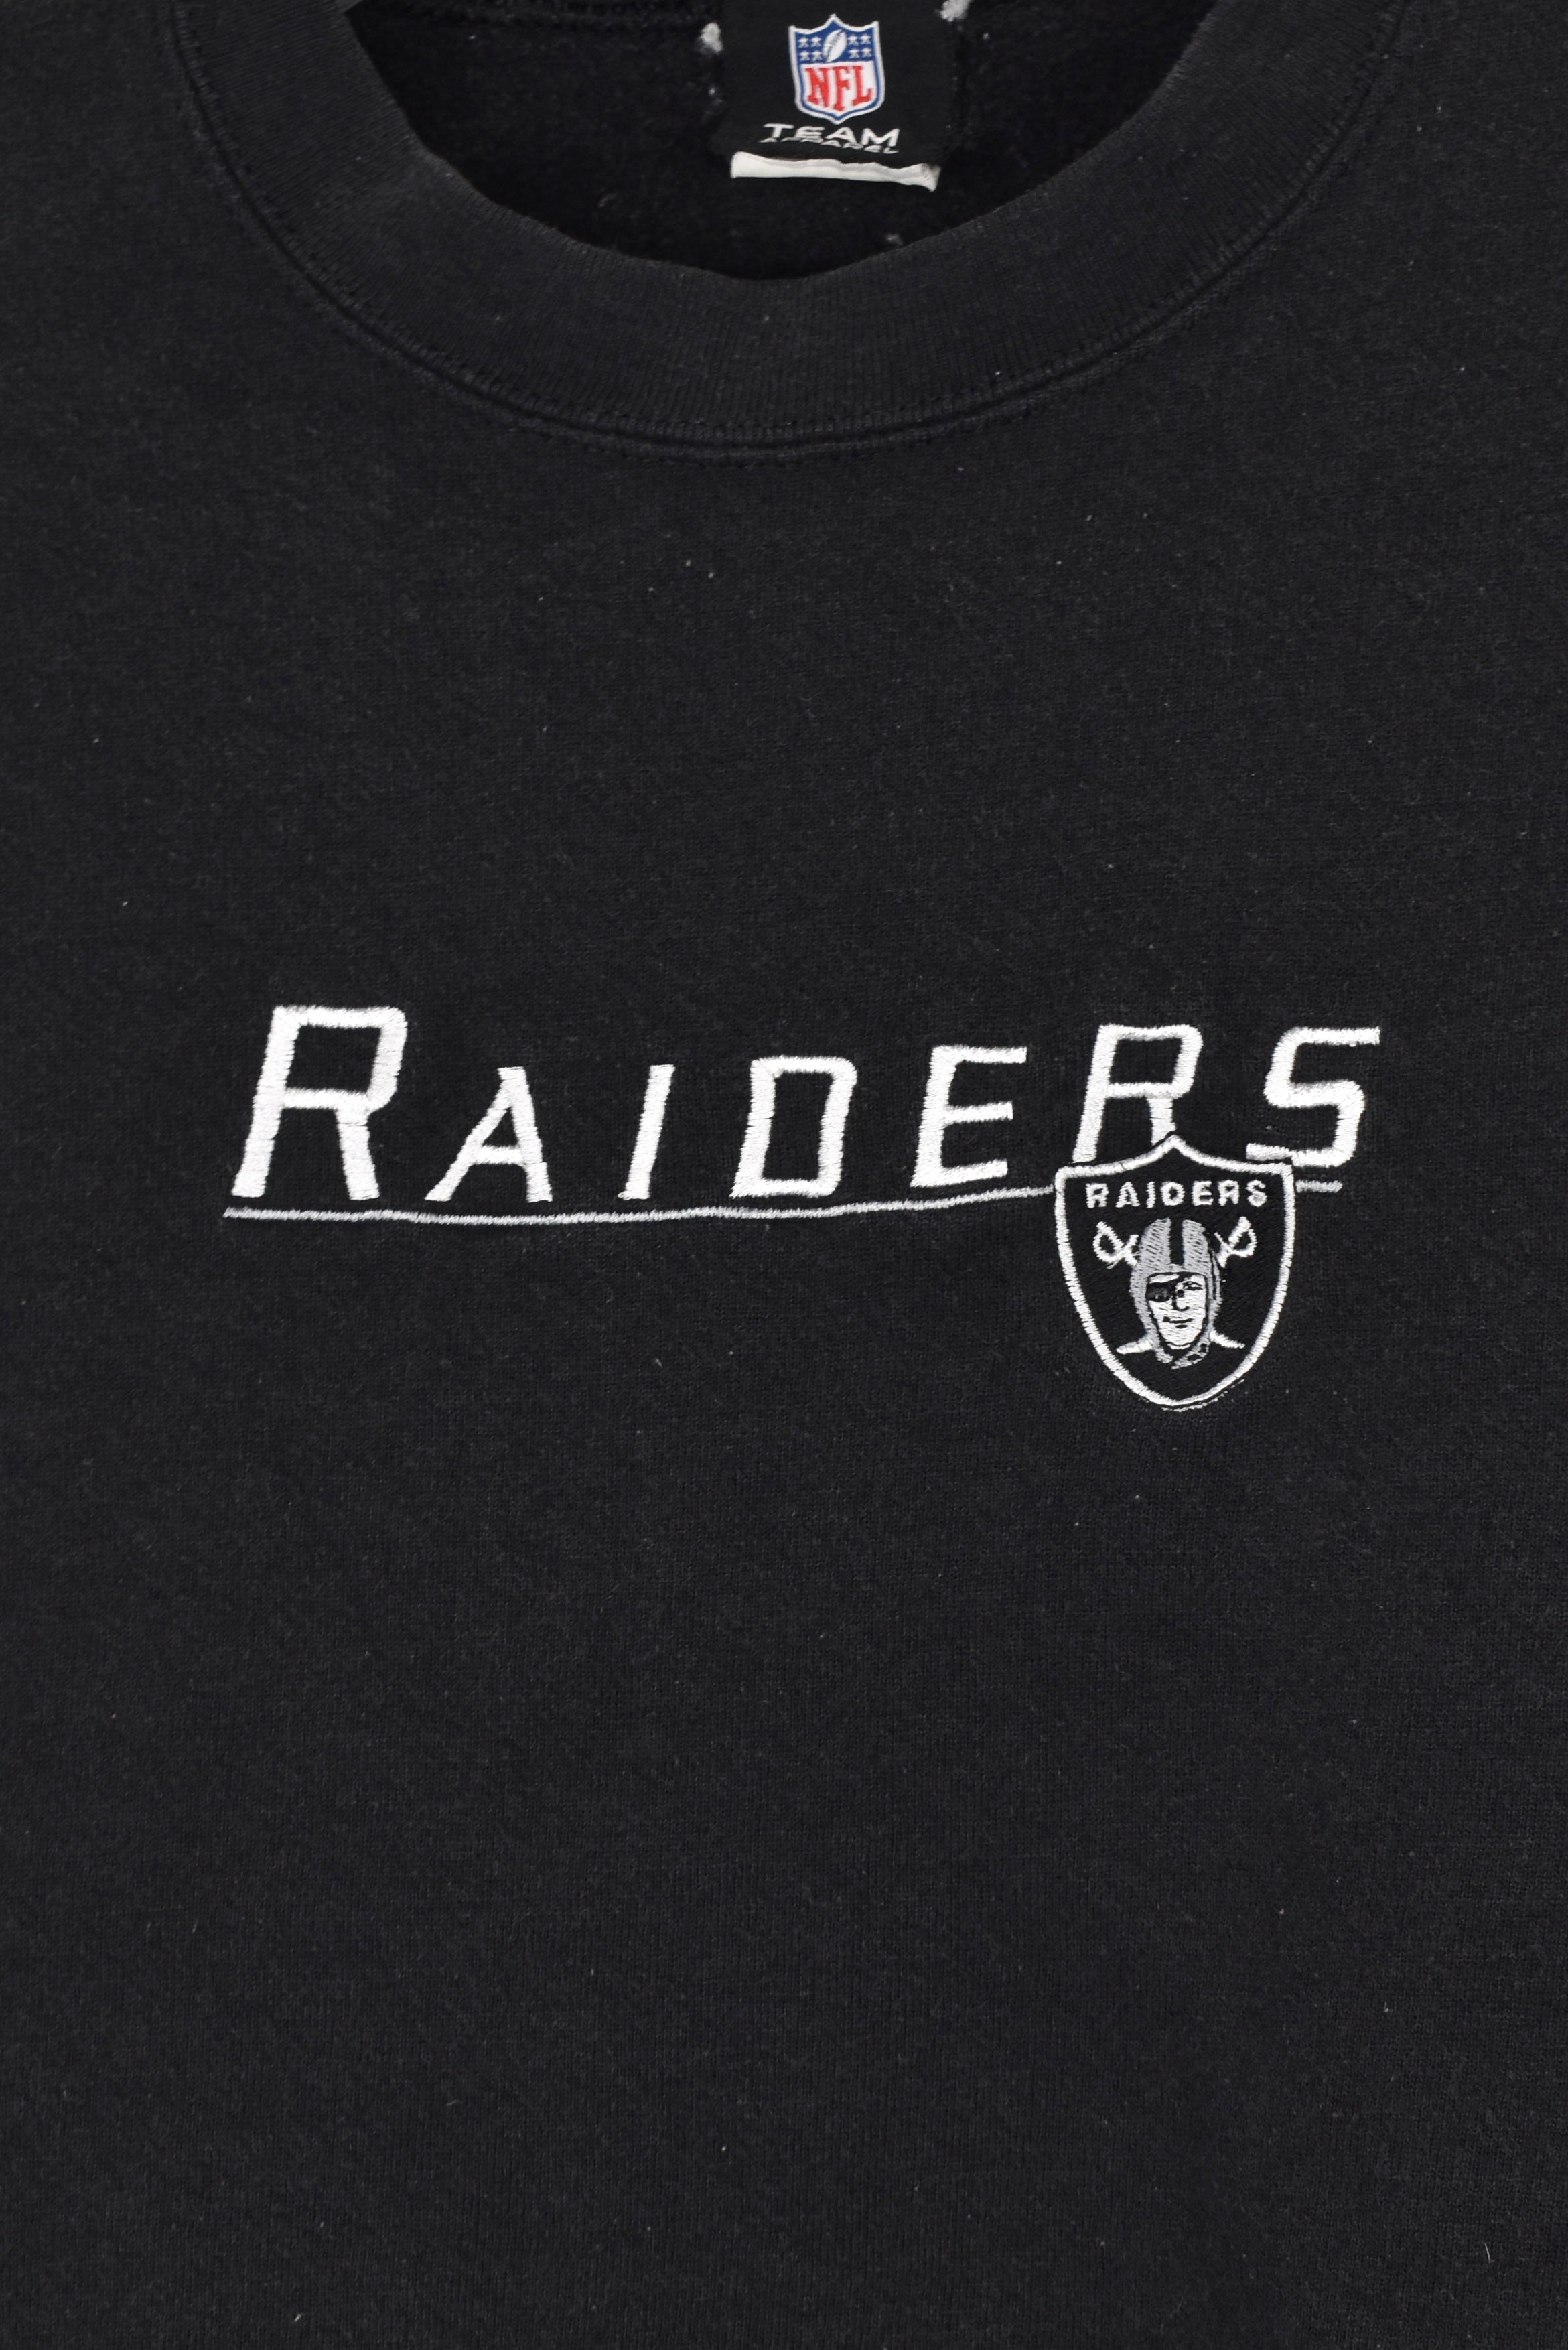 Vintage Oakland Raiders sweatshirt (L), black NFL embroidered crewneck